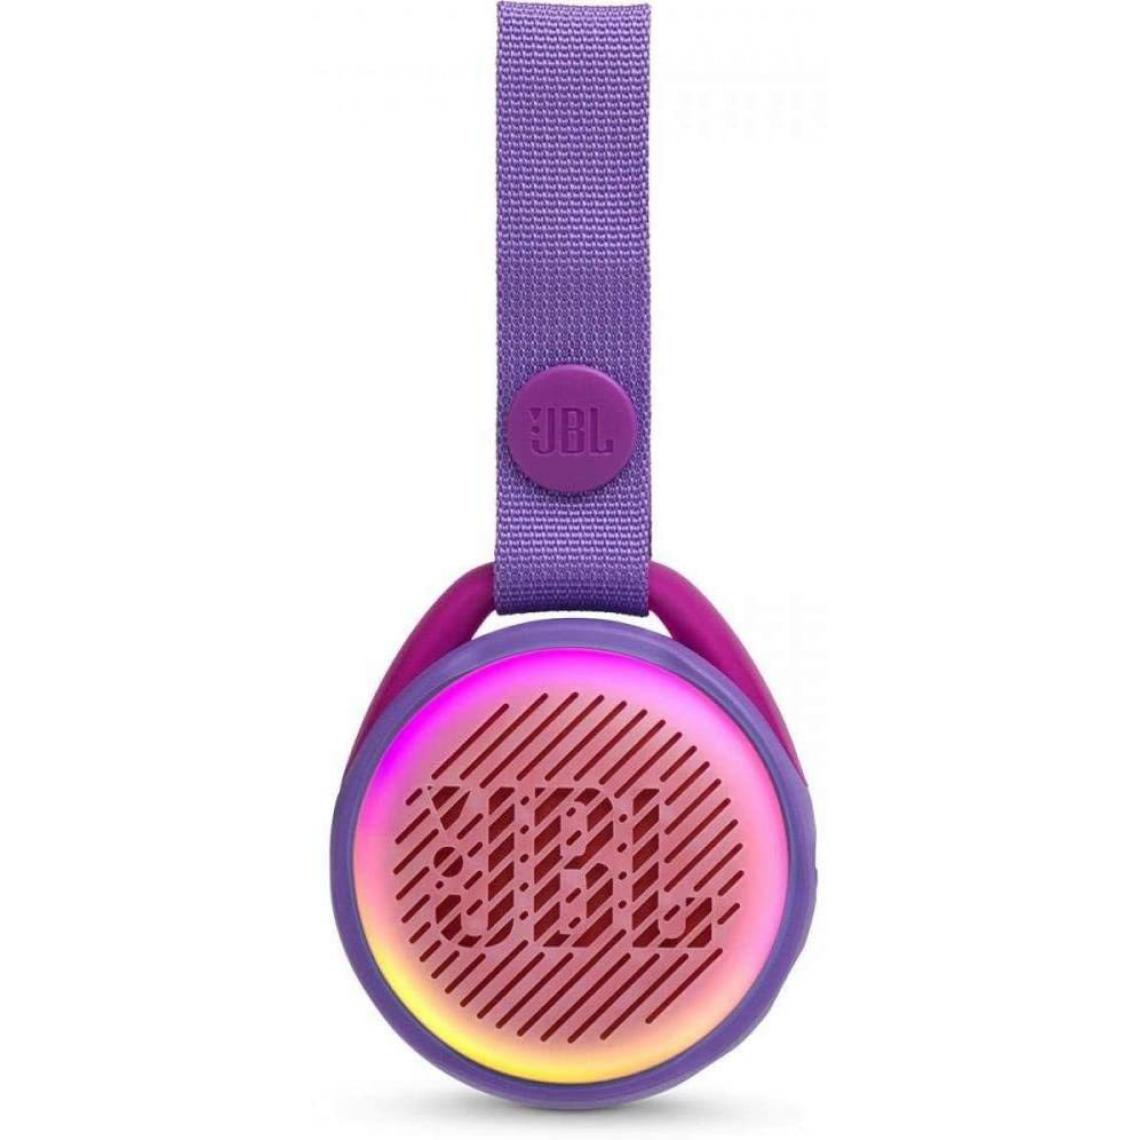 Chrono - JR POP JBL - Enceinte portable pour enfants - Bluetooth & Waterproof - Avec modes lumineux multicolores & autocollants - Autonomie 10 hrs,Violet - Enceintes Hifi